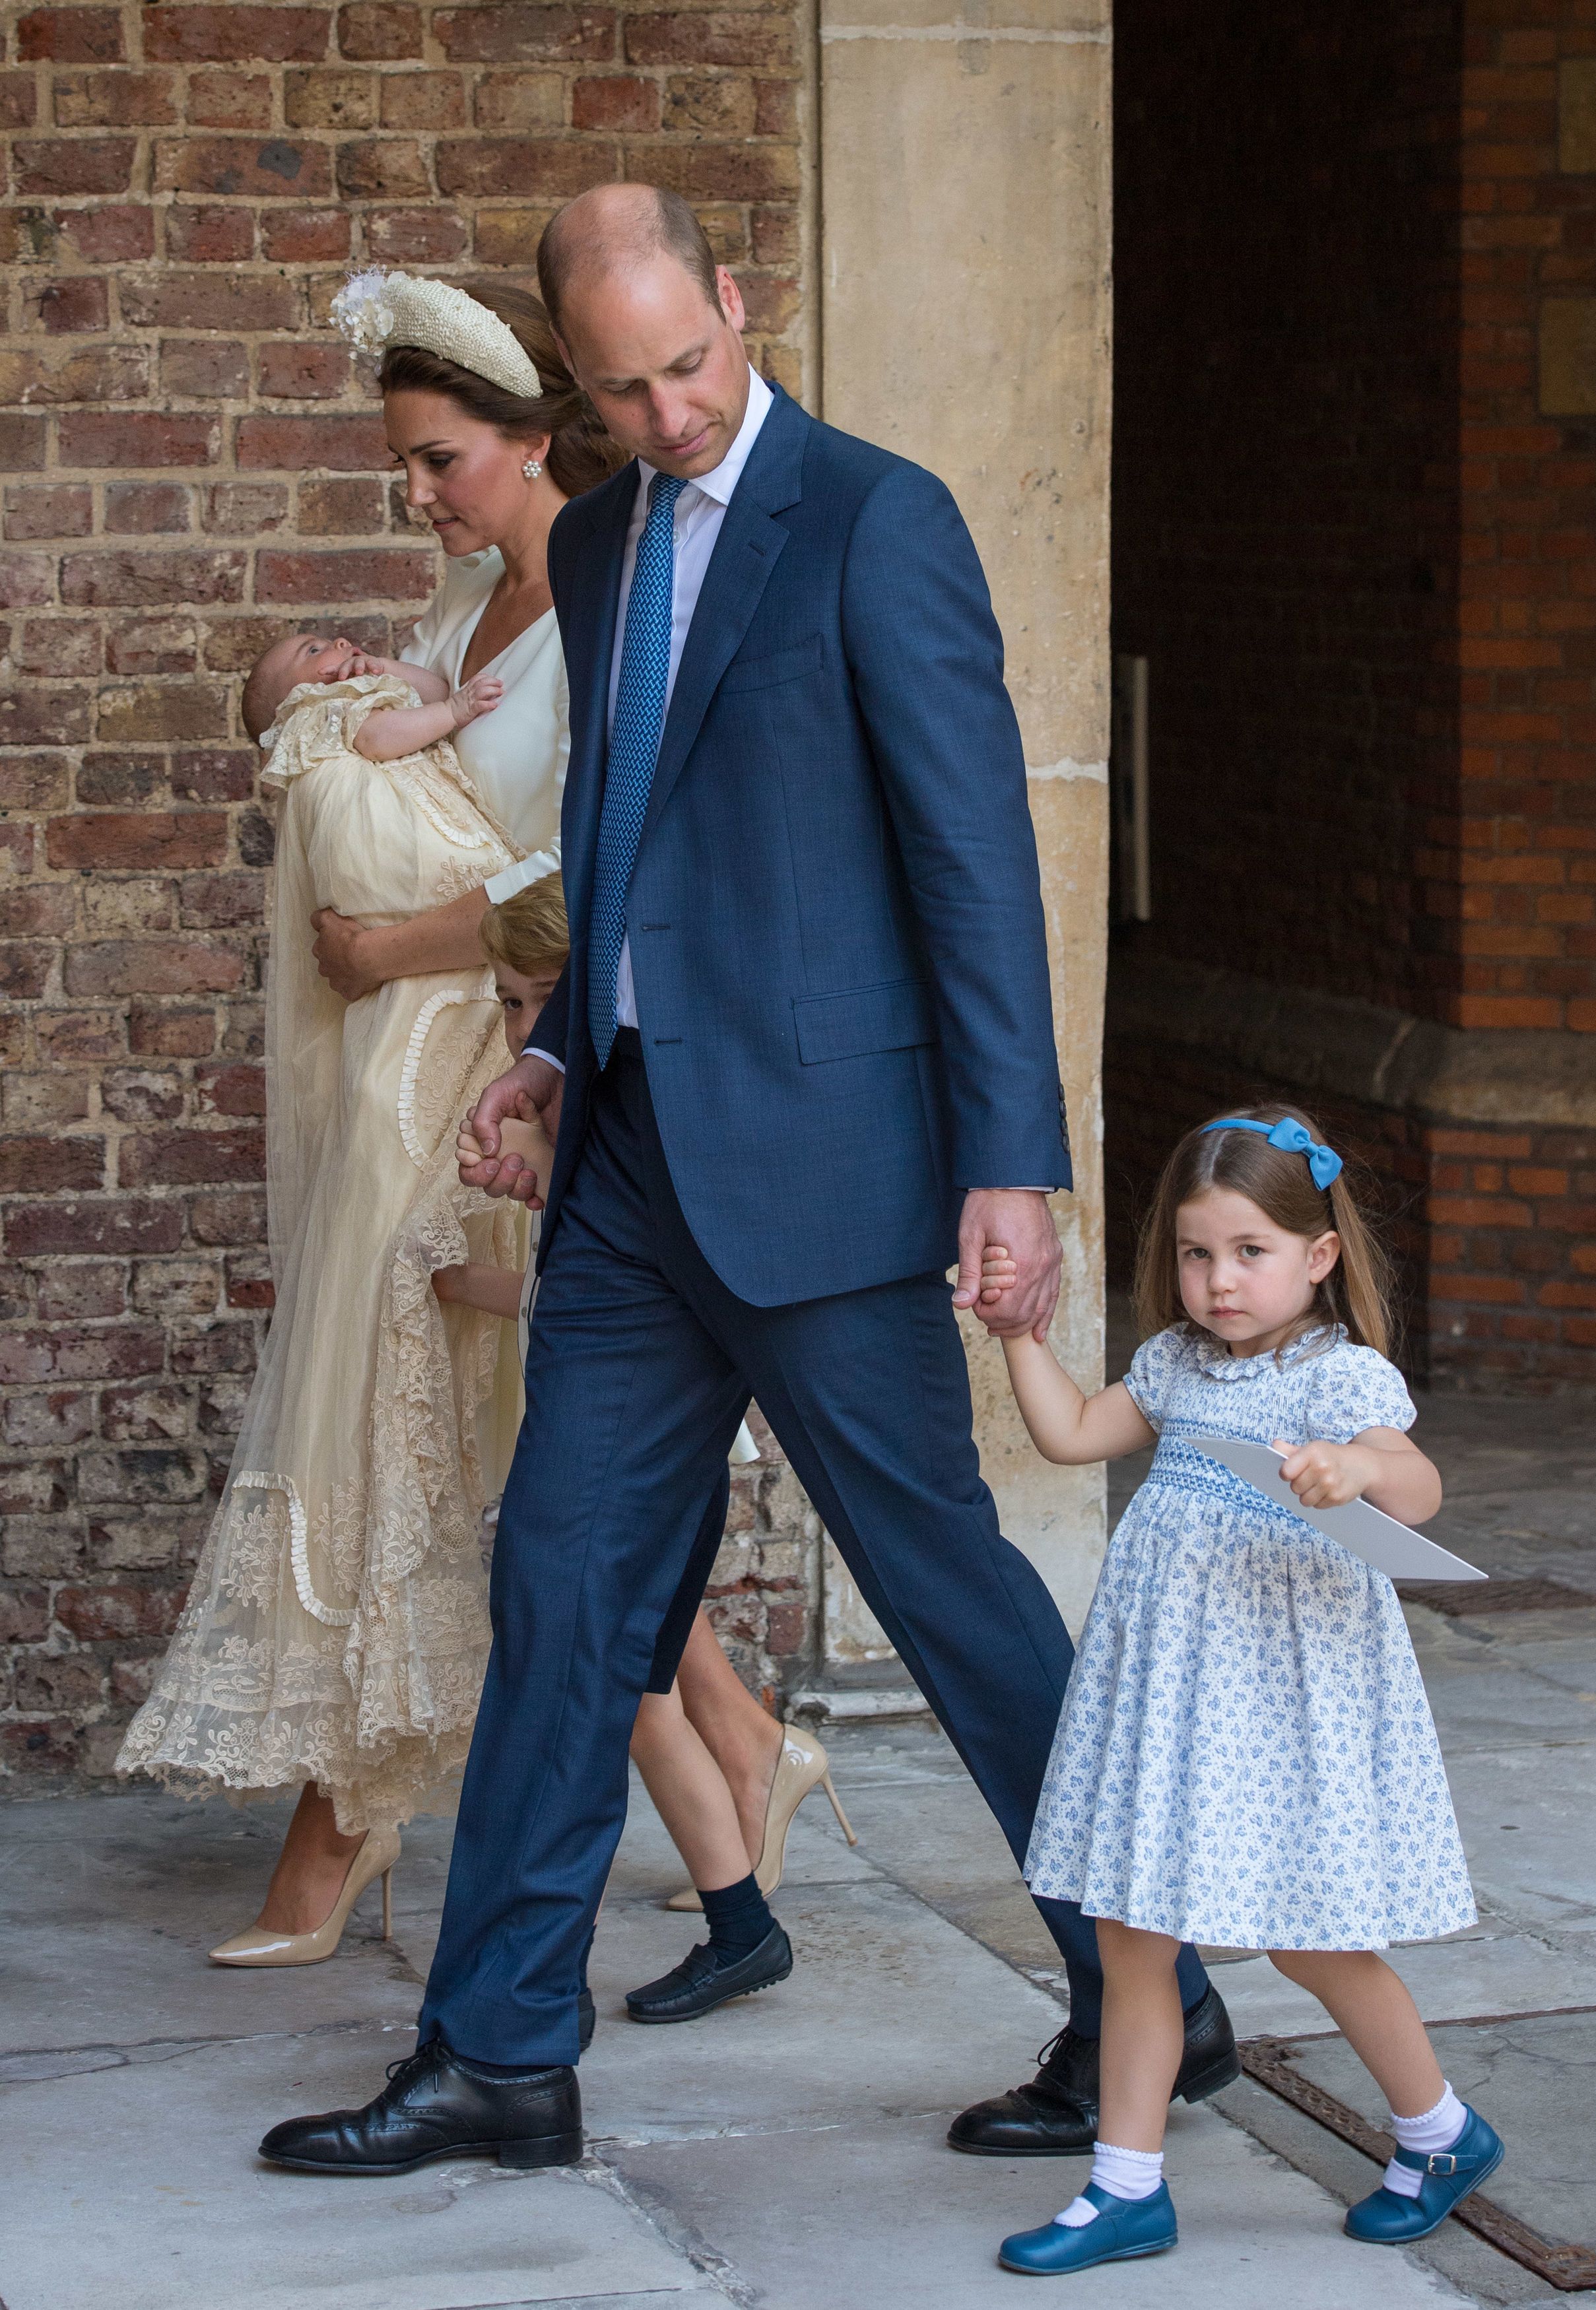 وصول الأمير وليام وزوجته الأميرة كيت ميدلتون إلى كنيسة ذا شابل رويال بقصر سانت جيم